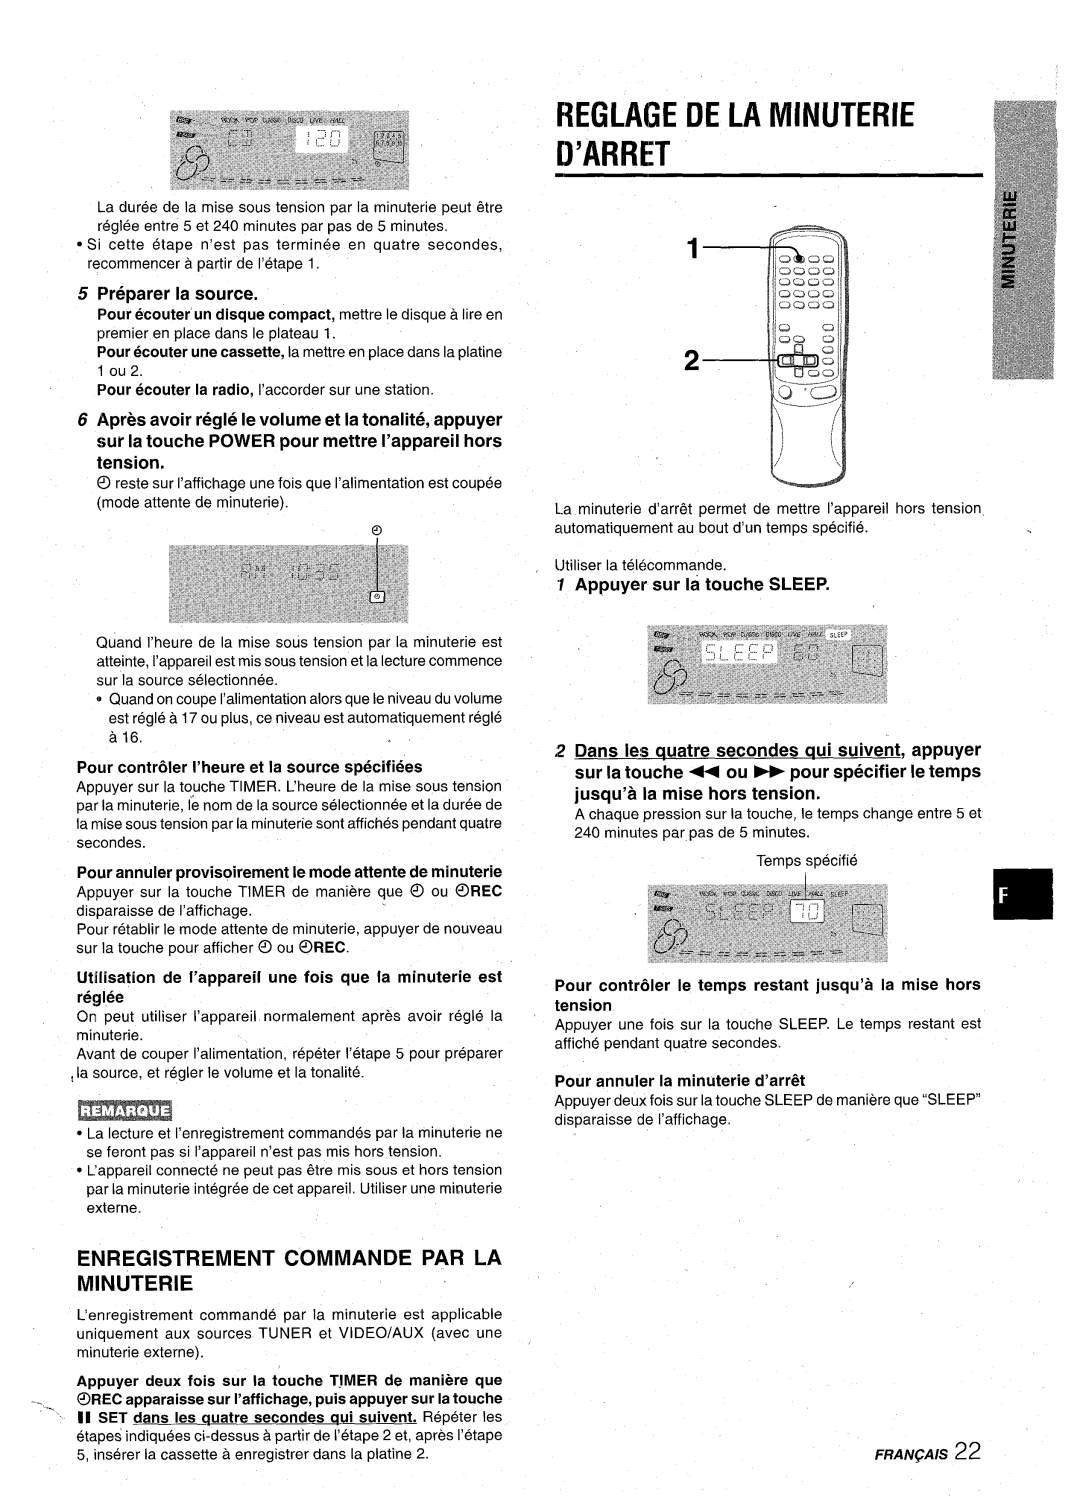 Aiwa CX-NA92 manual REGLAGE DE LA MINUTERIE ’A13RET, Enregistrement Commande Par La Minuterie, Preparer la source 